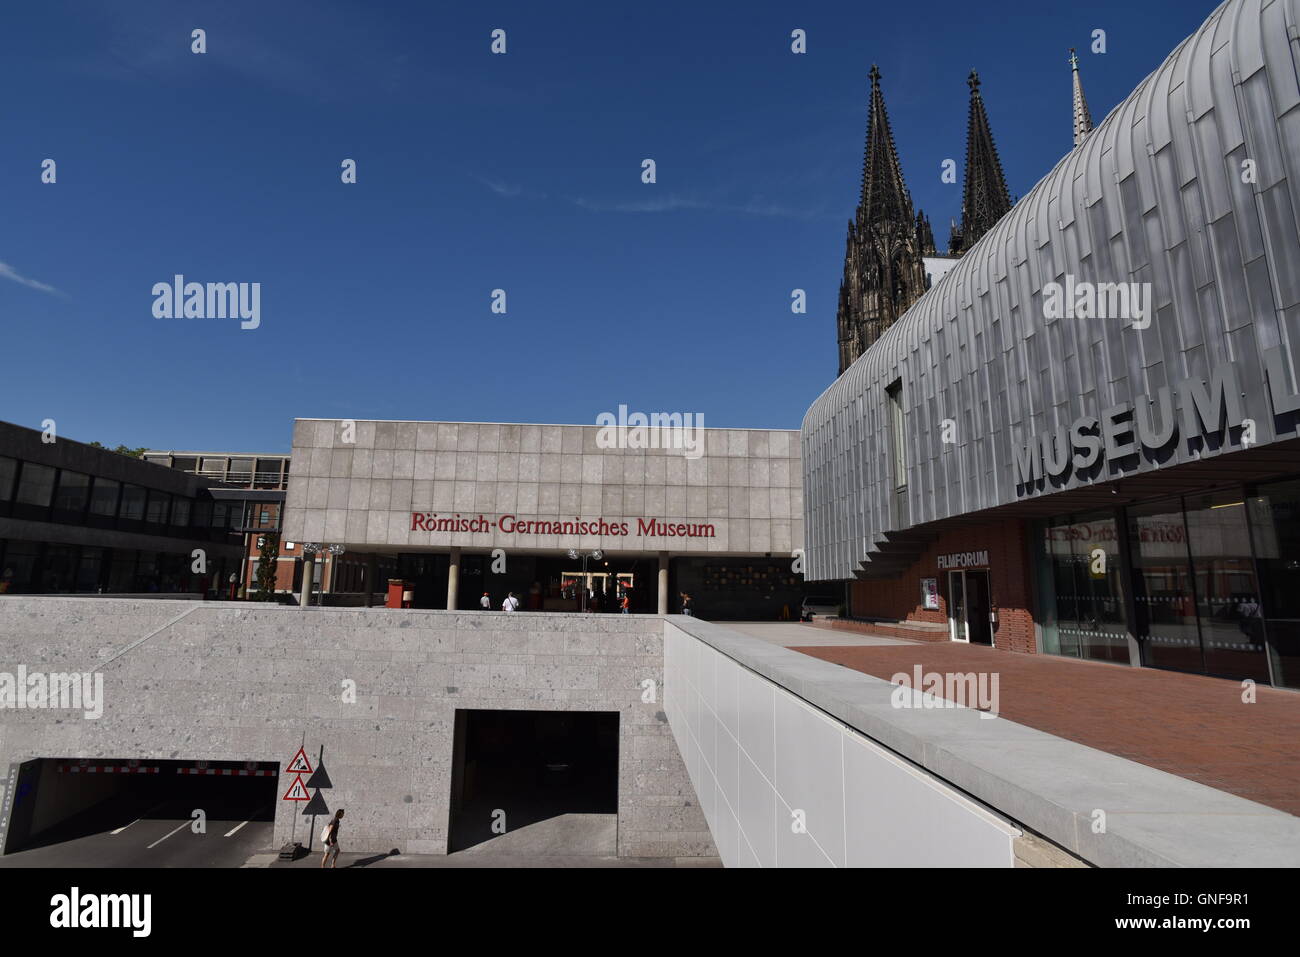 Cologne, Allemagne. Août 26, 2016. Musée Ludwig et le musée romain-germanique en face de la cathédrale de Cologne à Cologne, Allemagne, 26 août 2016. Photo : Horst Galuschka - AUCUN FIL - SERVICE/dpa/Alamy Live News Banque D'Images